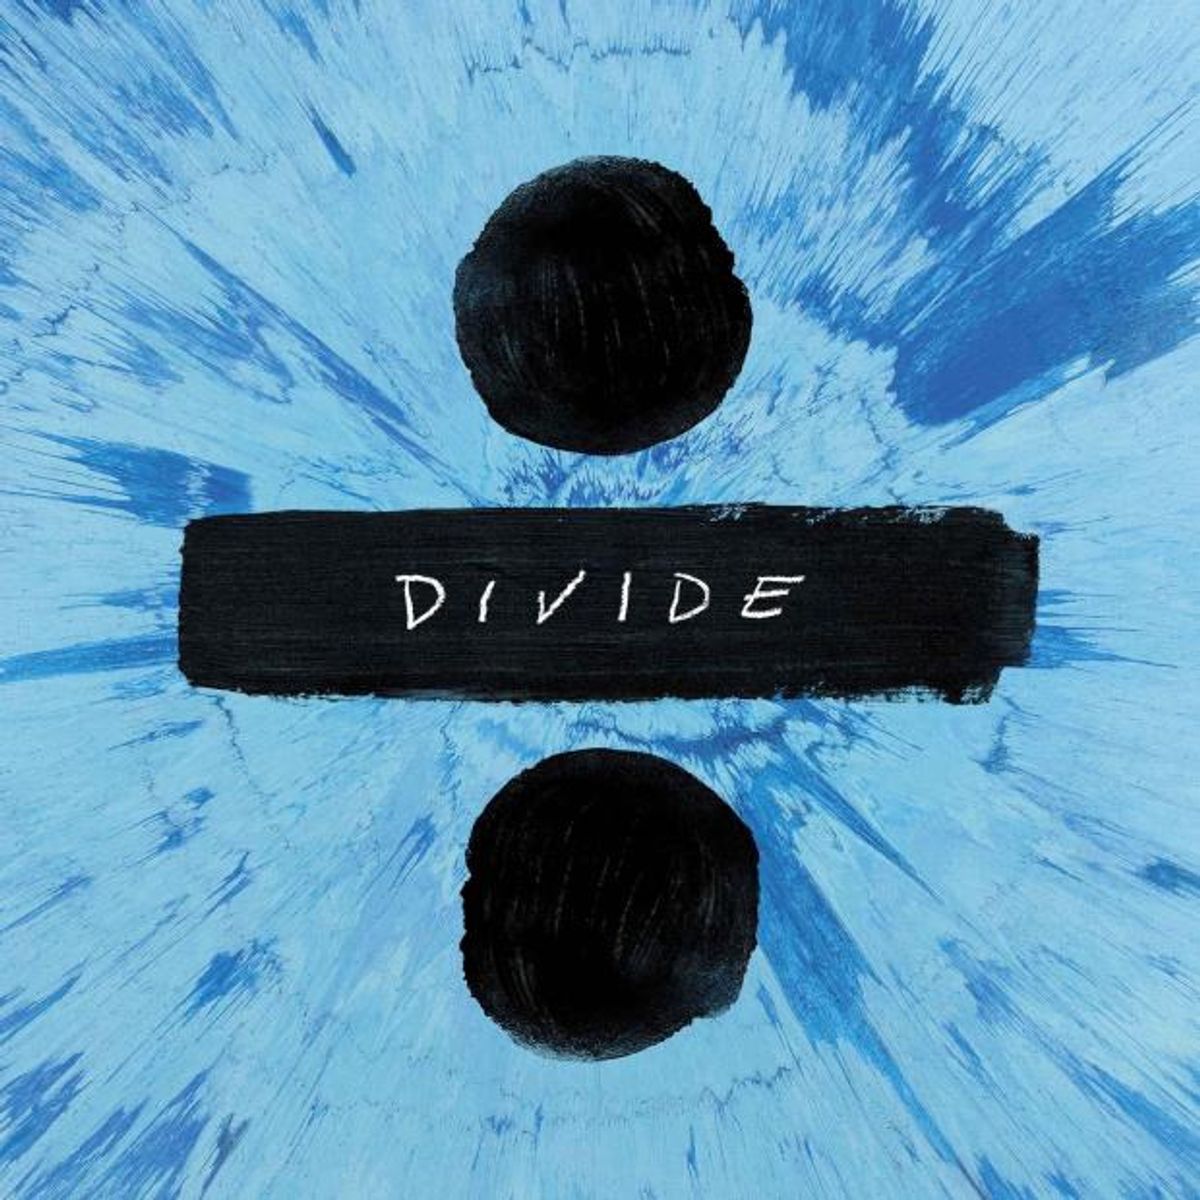 Ed Sheeran's 'Divide' Review